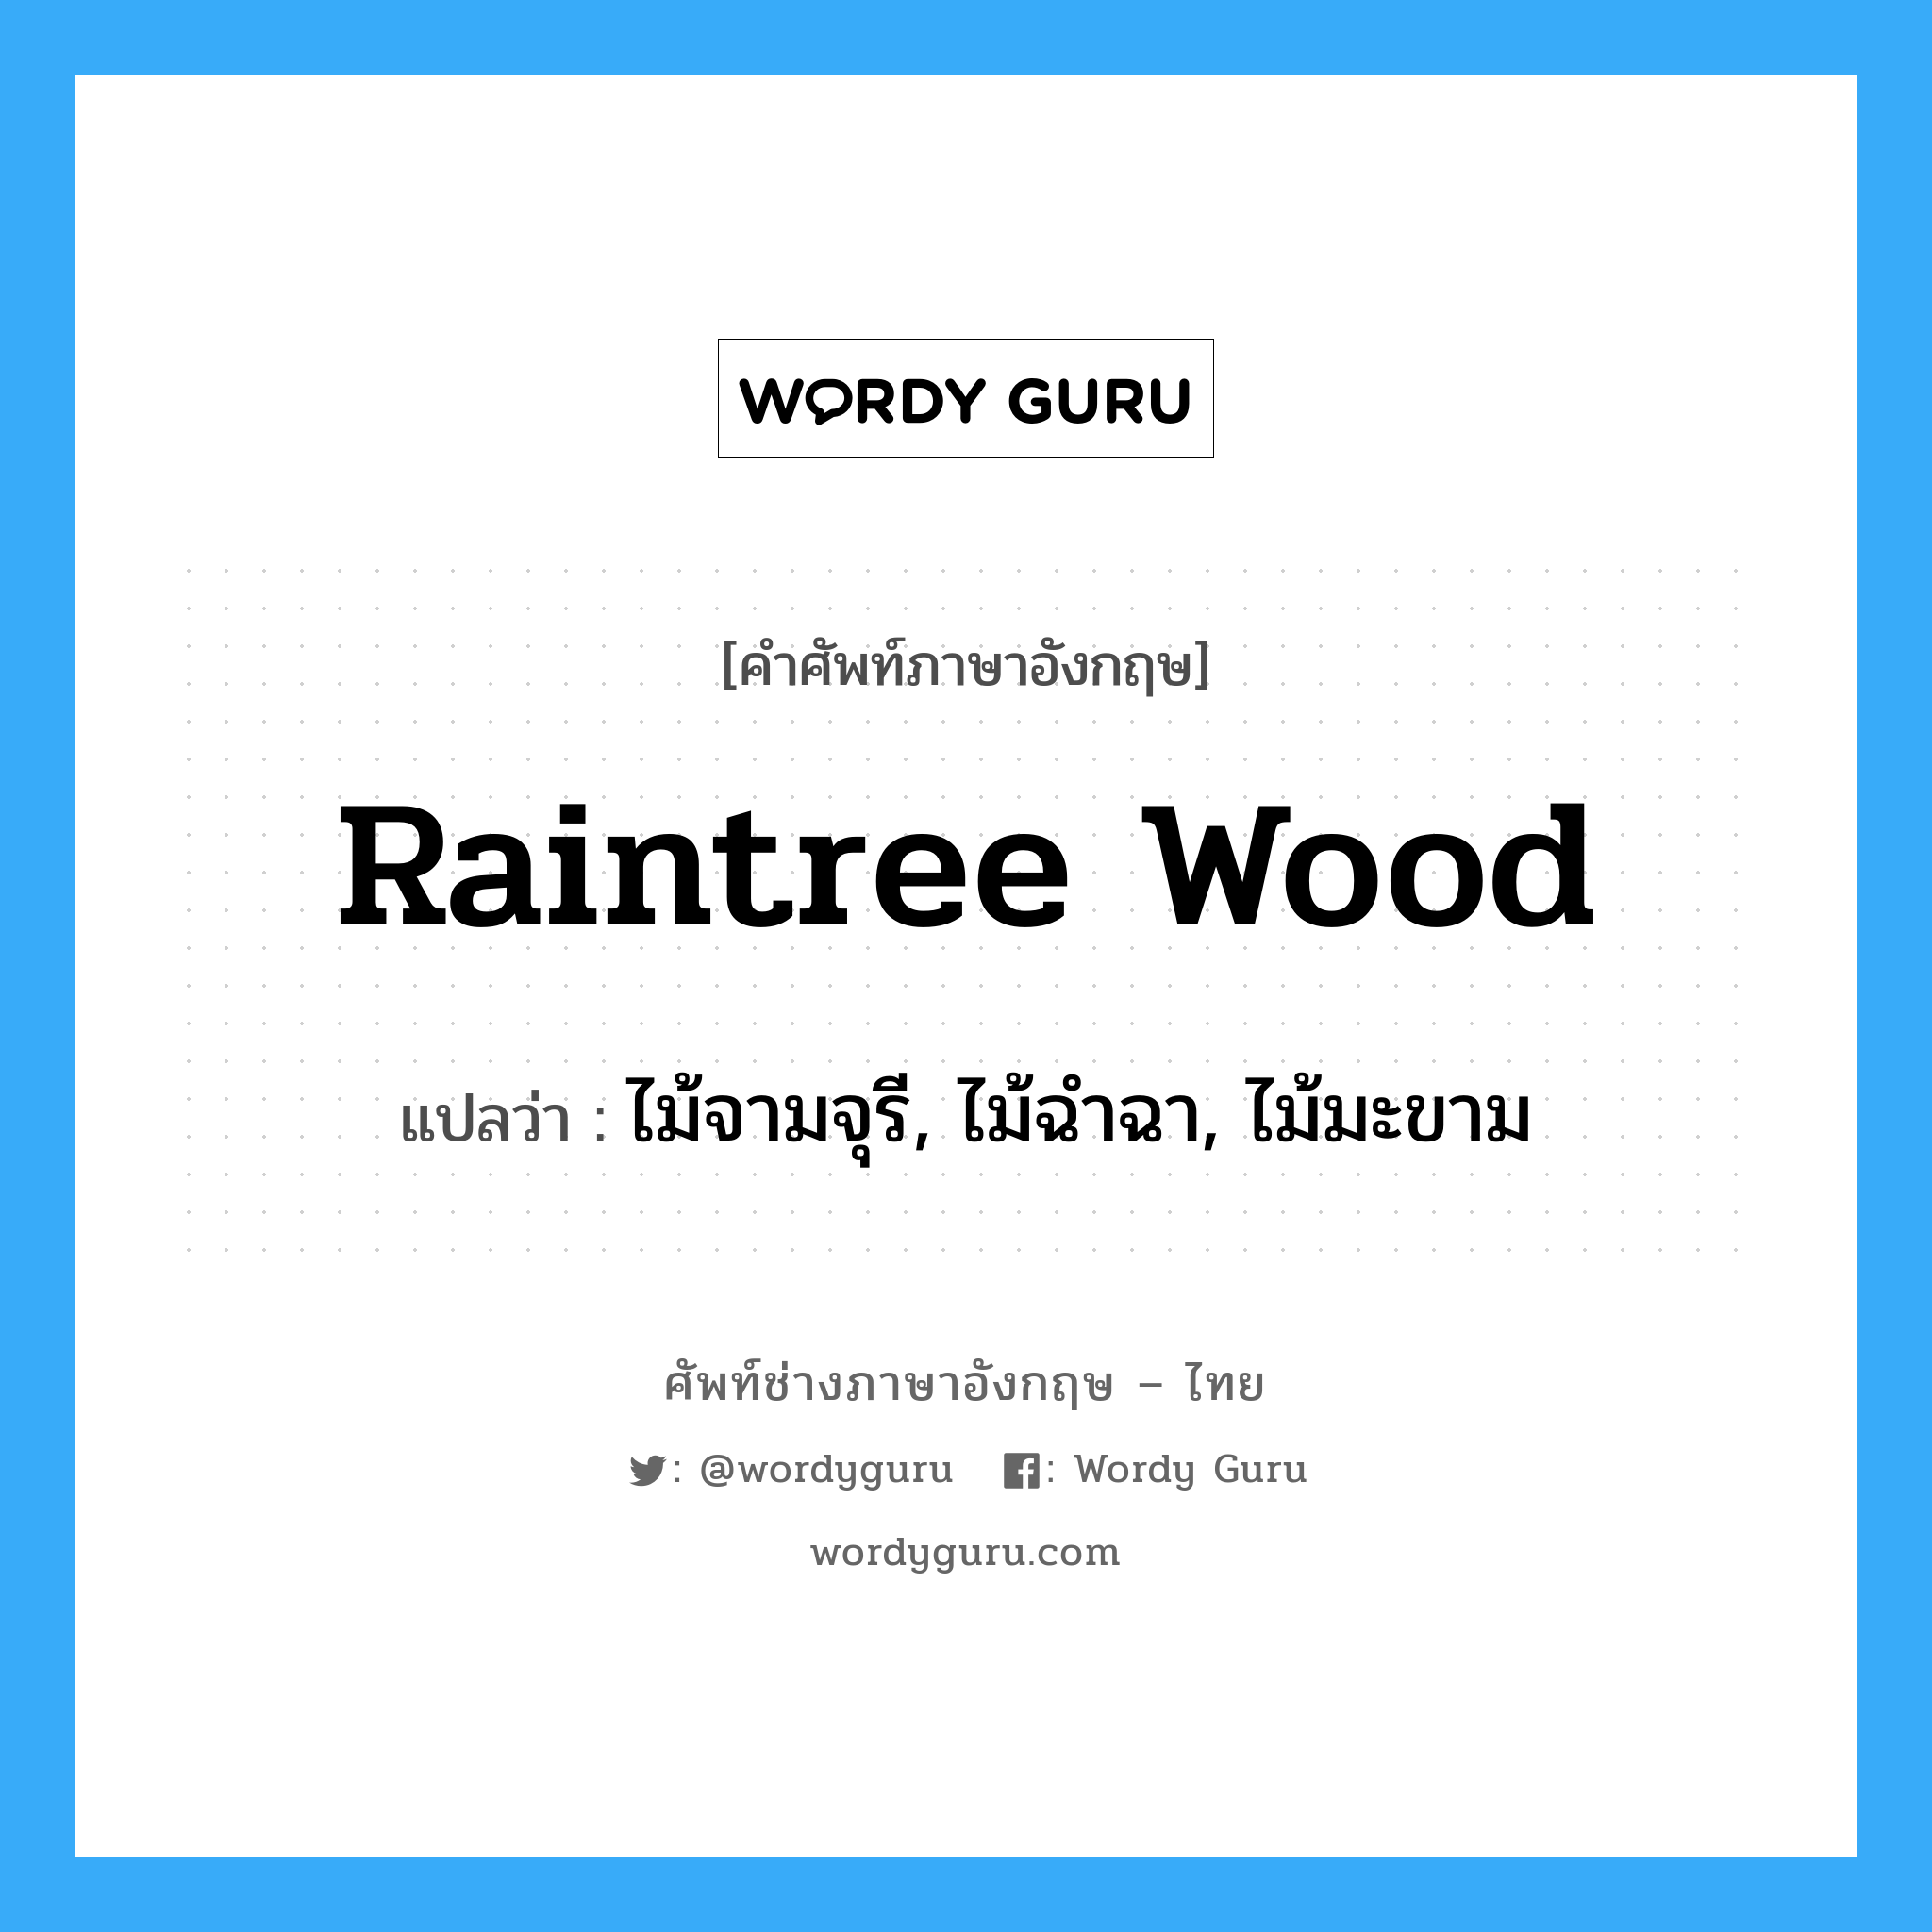 raintree wood แปลว่า?, คำศัพท์ช่างภาษาอังกฤษ - ไทย raintree wood คำศัพท์ภาษาอังกฤษ raintree wood แปลว่า ไม้จามจุรี, ไม้ฉำฉา, ไม้มะขาม